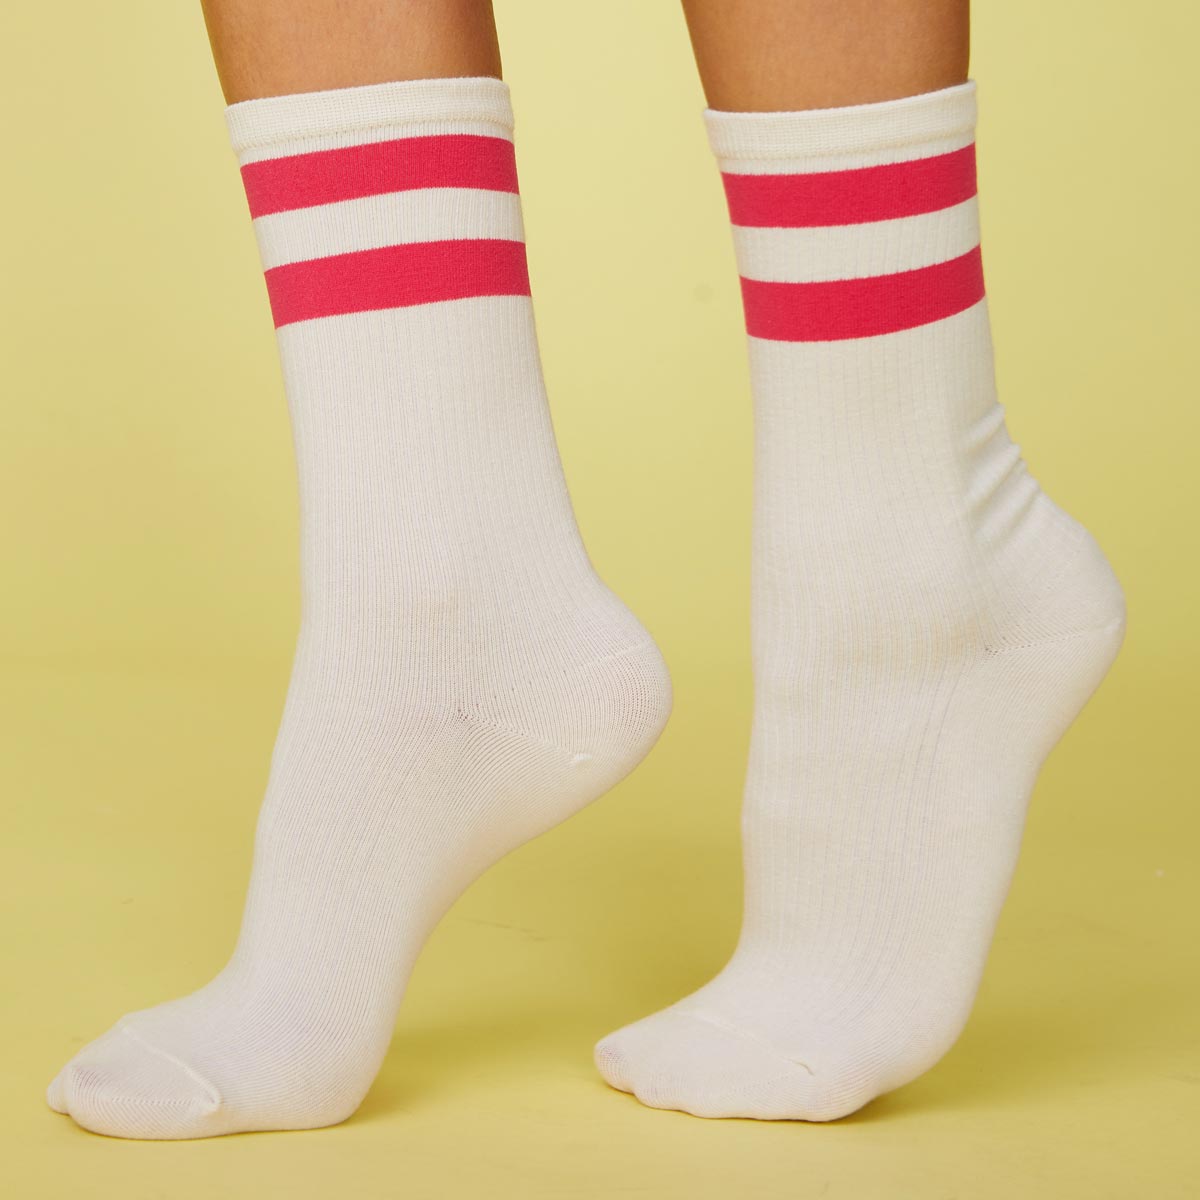 Side view of model's feet wearing the stripe socks in raspberry.